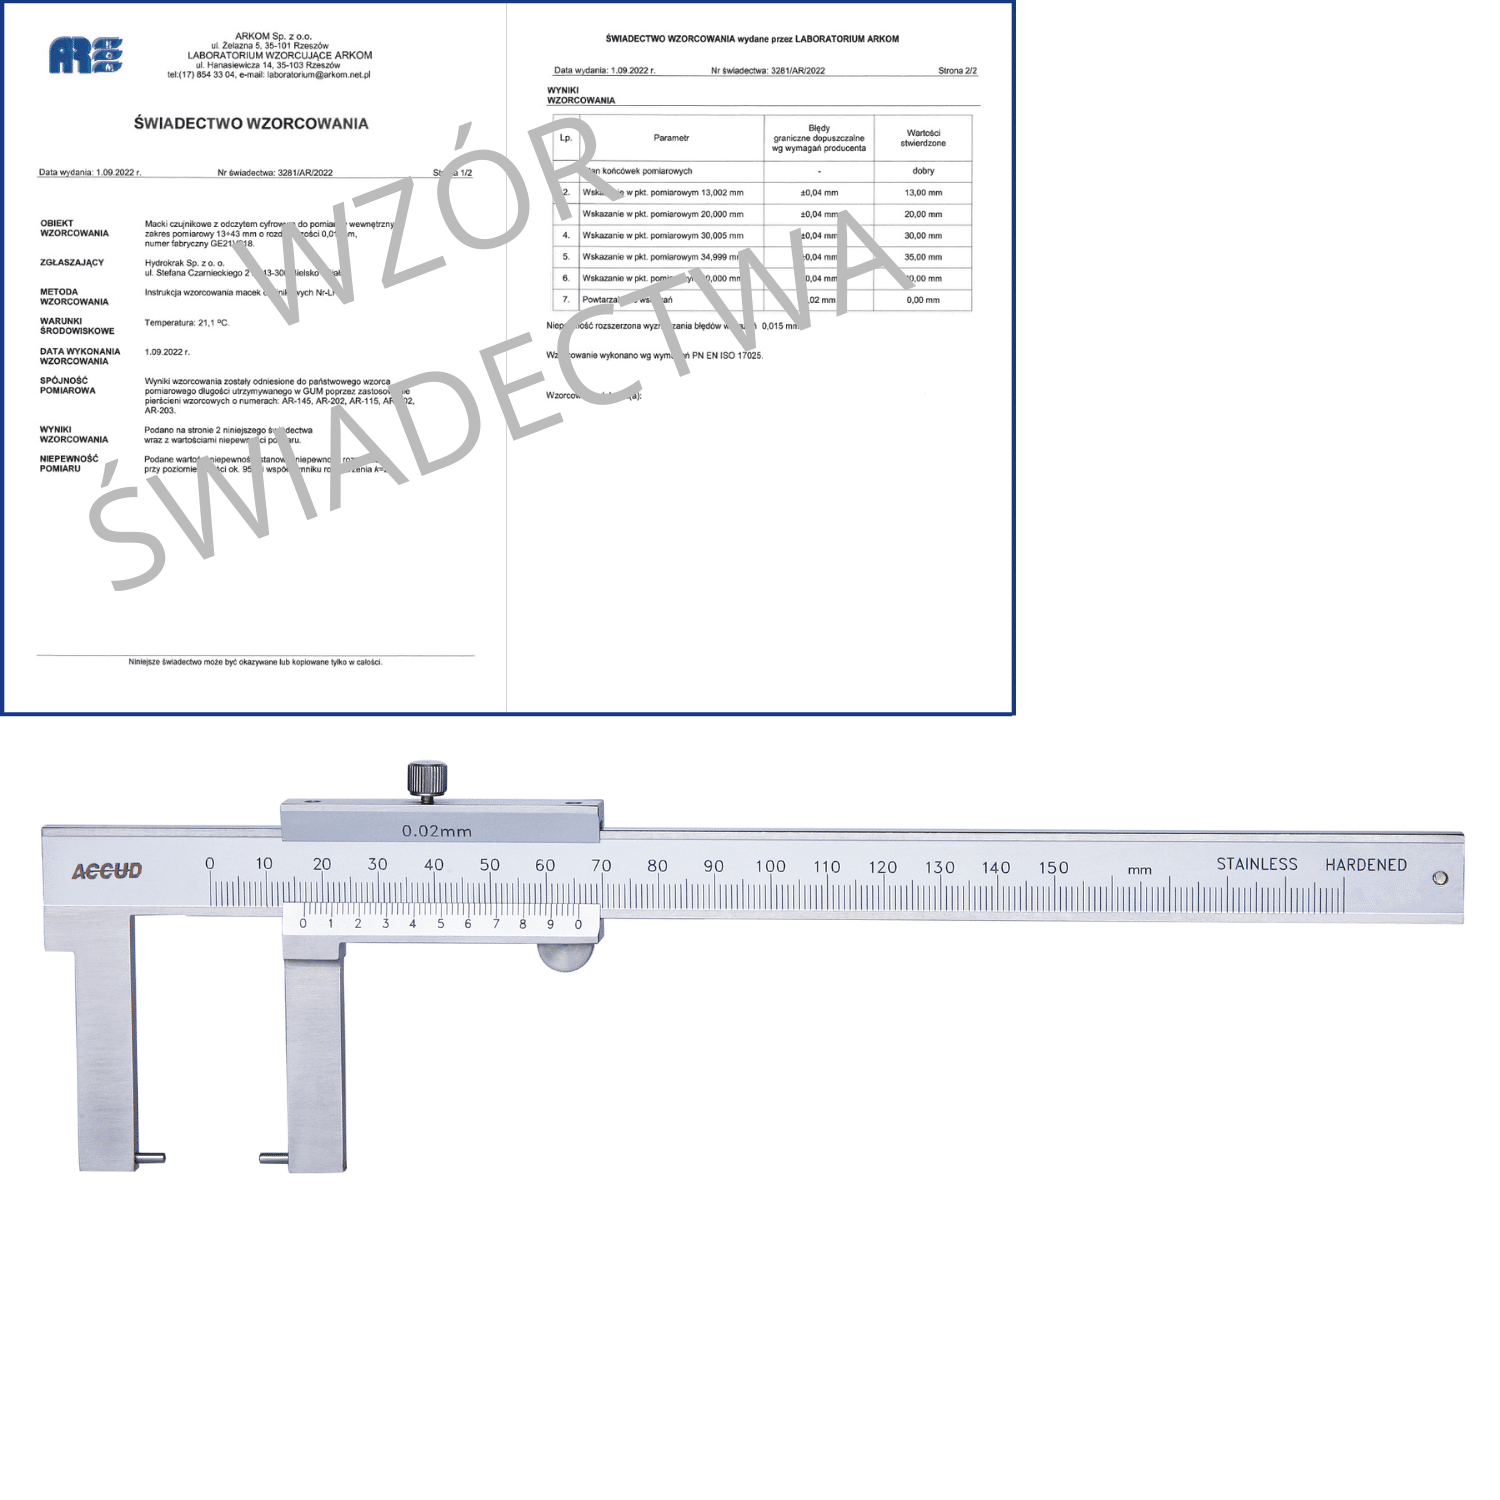 ACCUD suwmiarka analogowa 150/0.02 mm do pomiarów zewnętrznych + świadectwo wzorcowania 144-006-11 WZORC